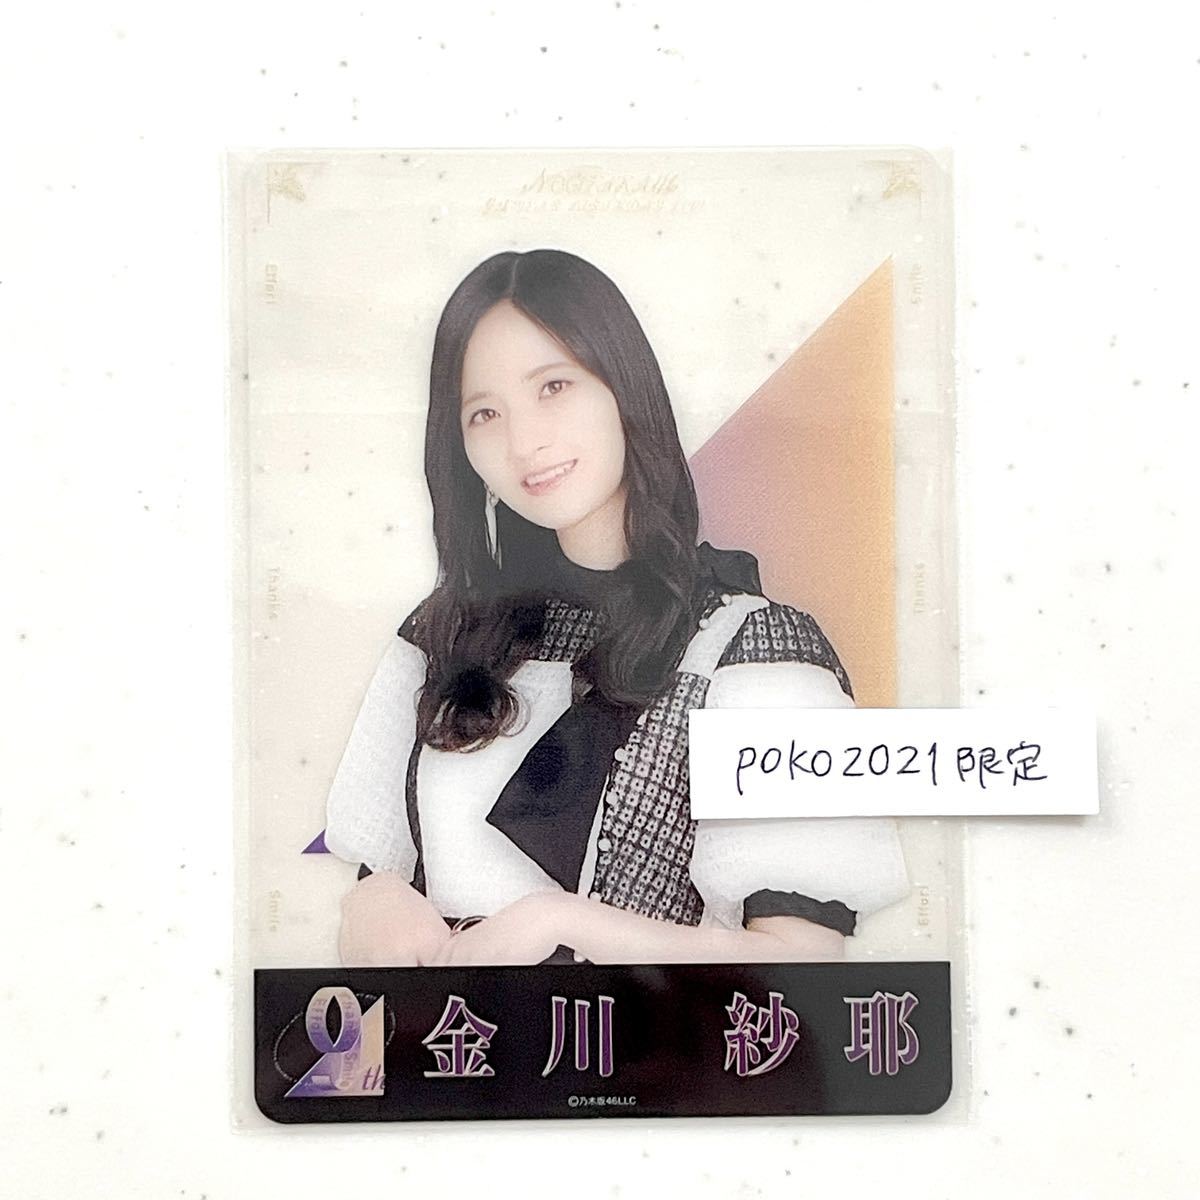 नोगीज़ाका46 क्लियर कार्ड कनकावा साया बोनस व्यक्तिगत क्लियर कार्ड 1 पीस 9वीं सालगिरह सालगिरह बिक्री के लिए नहीं फोटो स्टाइल, ना पंक्ति, का, नोगीज़ाका46